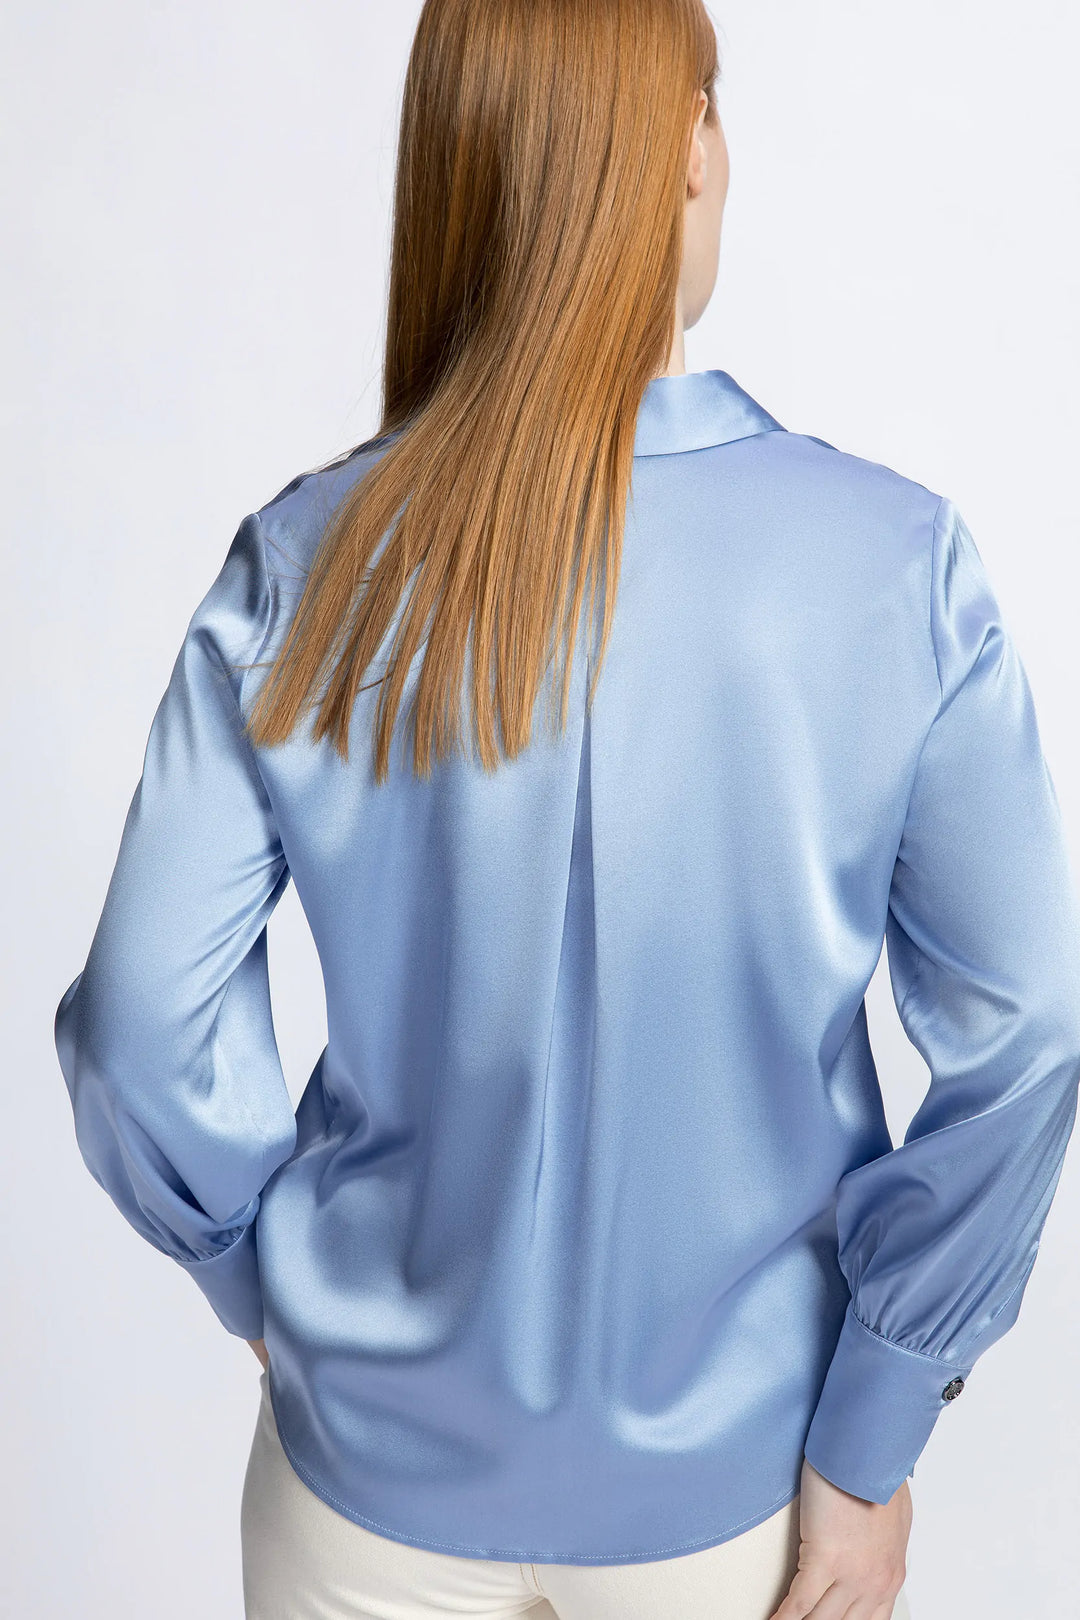 baby blue zijde blouse - xandres - hint-baby-blue - grote maten - dameskleding - kledingwinkel - herent - leuven